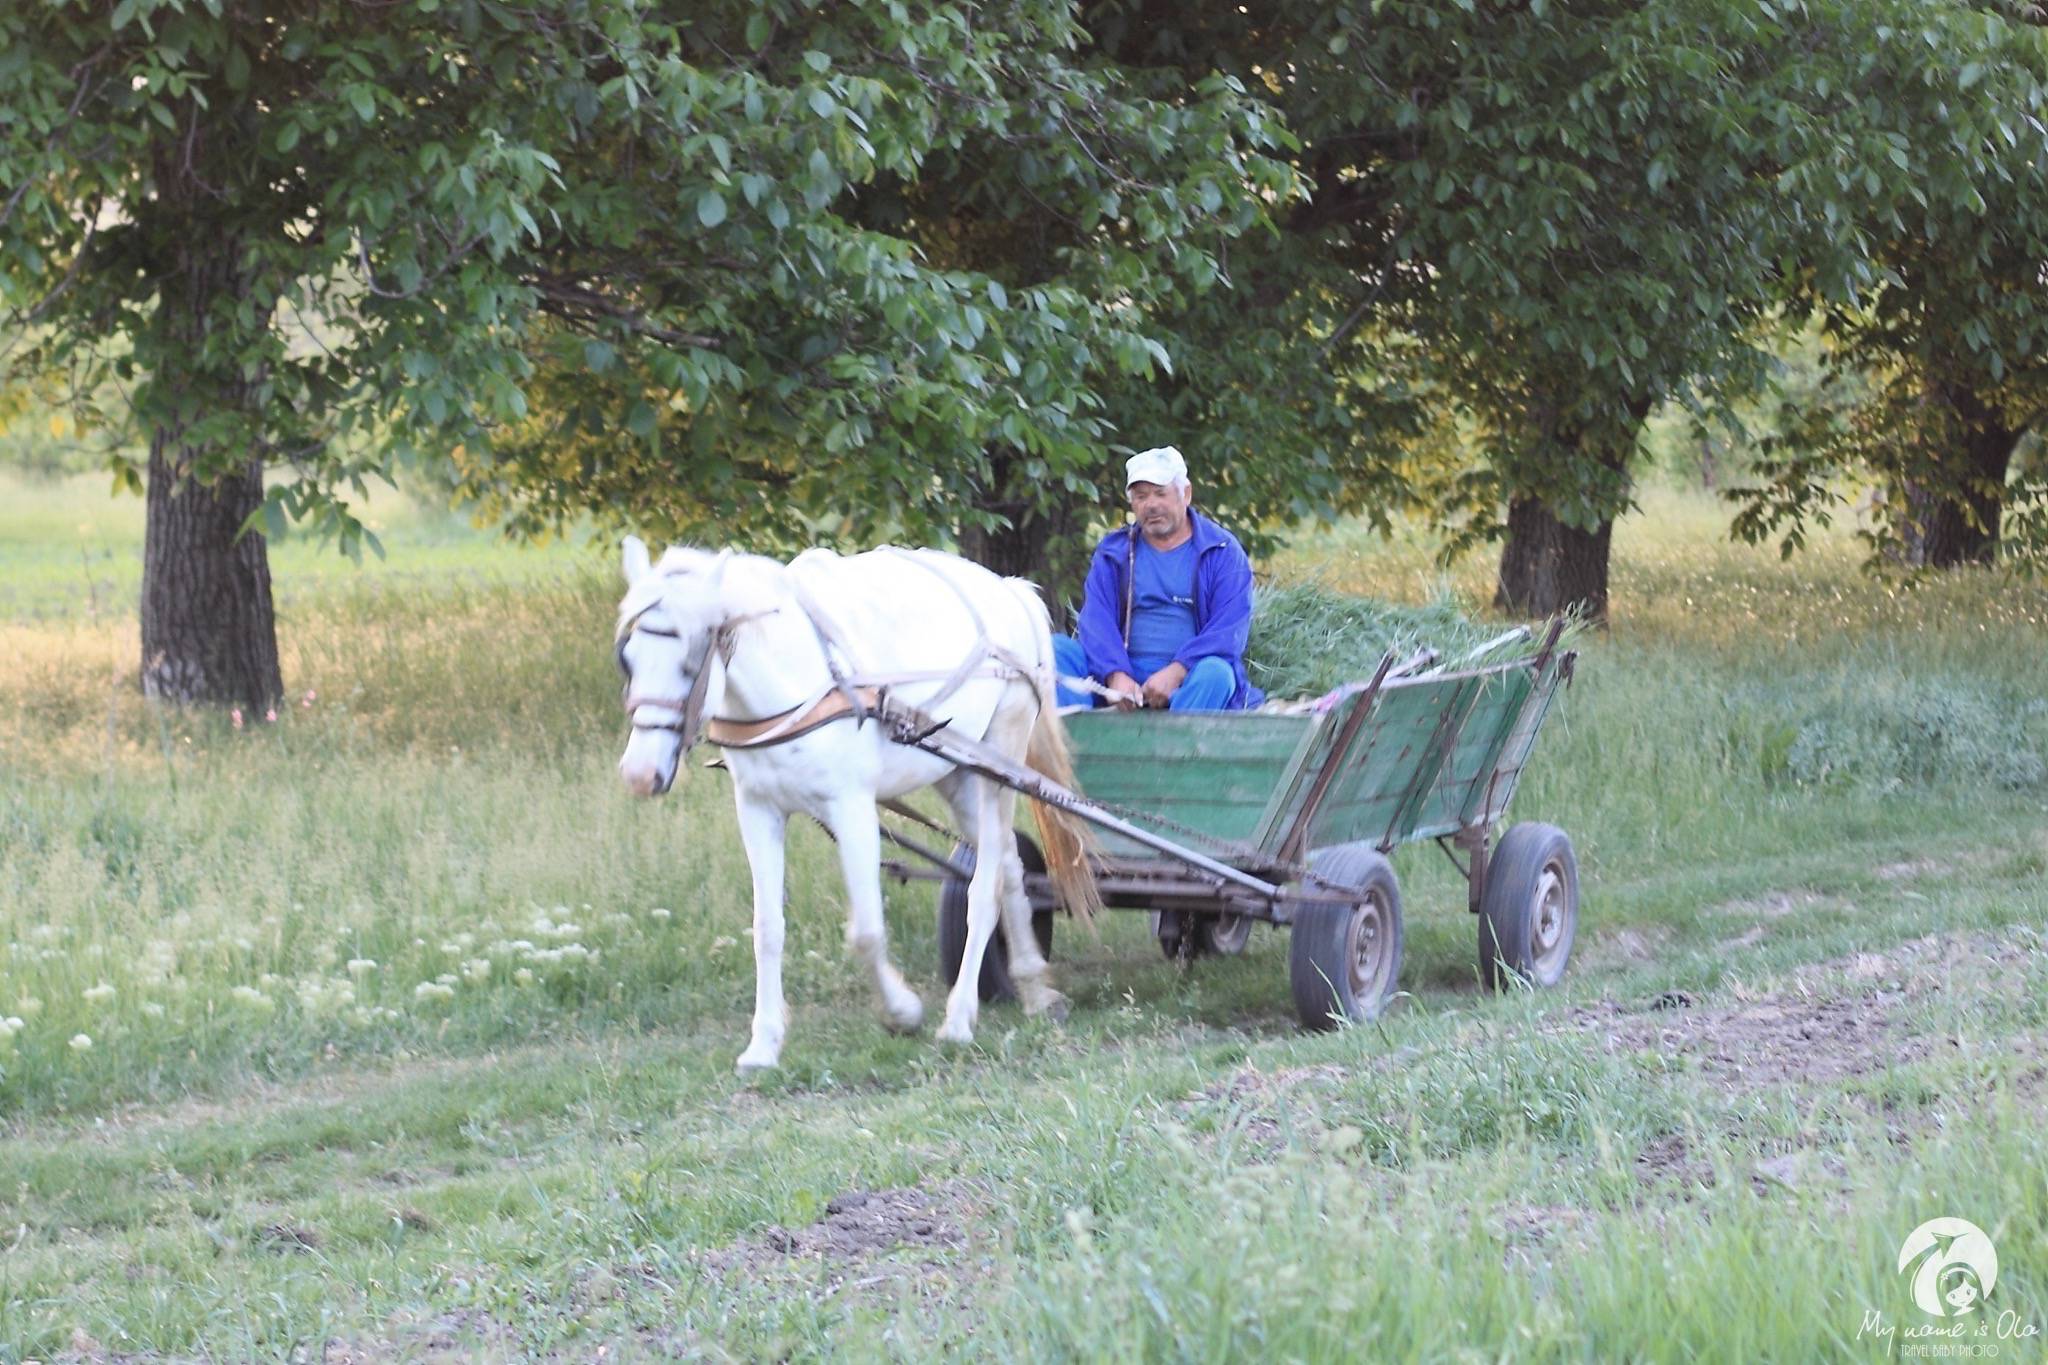 Transport in Moldova